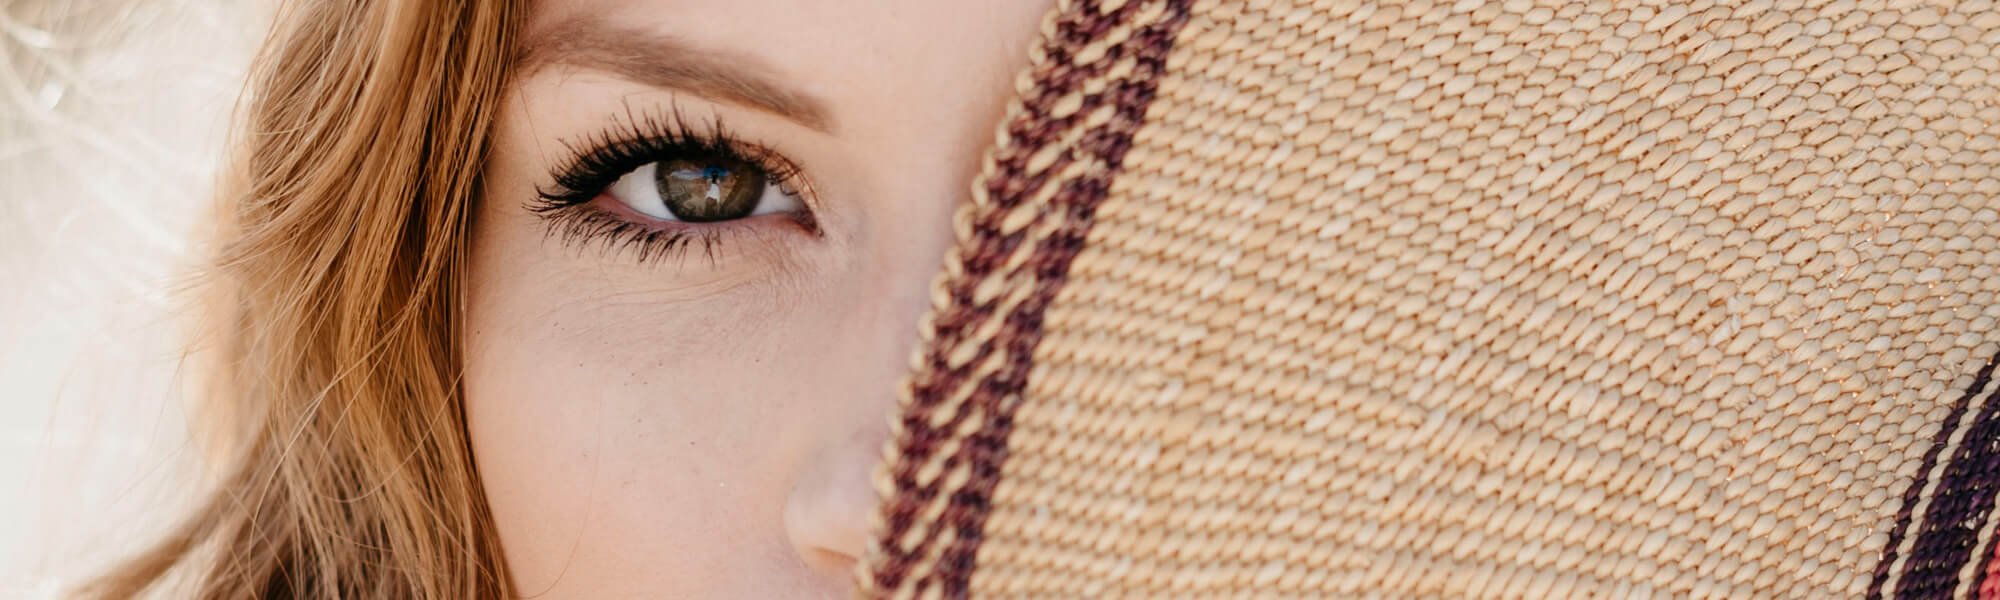 5 Cara Merawat Area Mata Dengan Skin Care Yang Mengandung Hyaluronic Acid